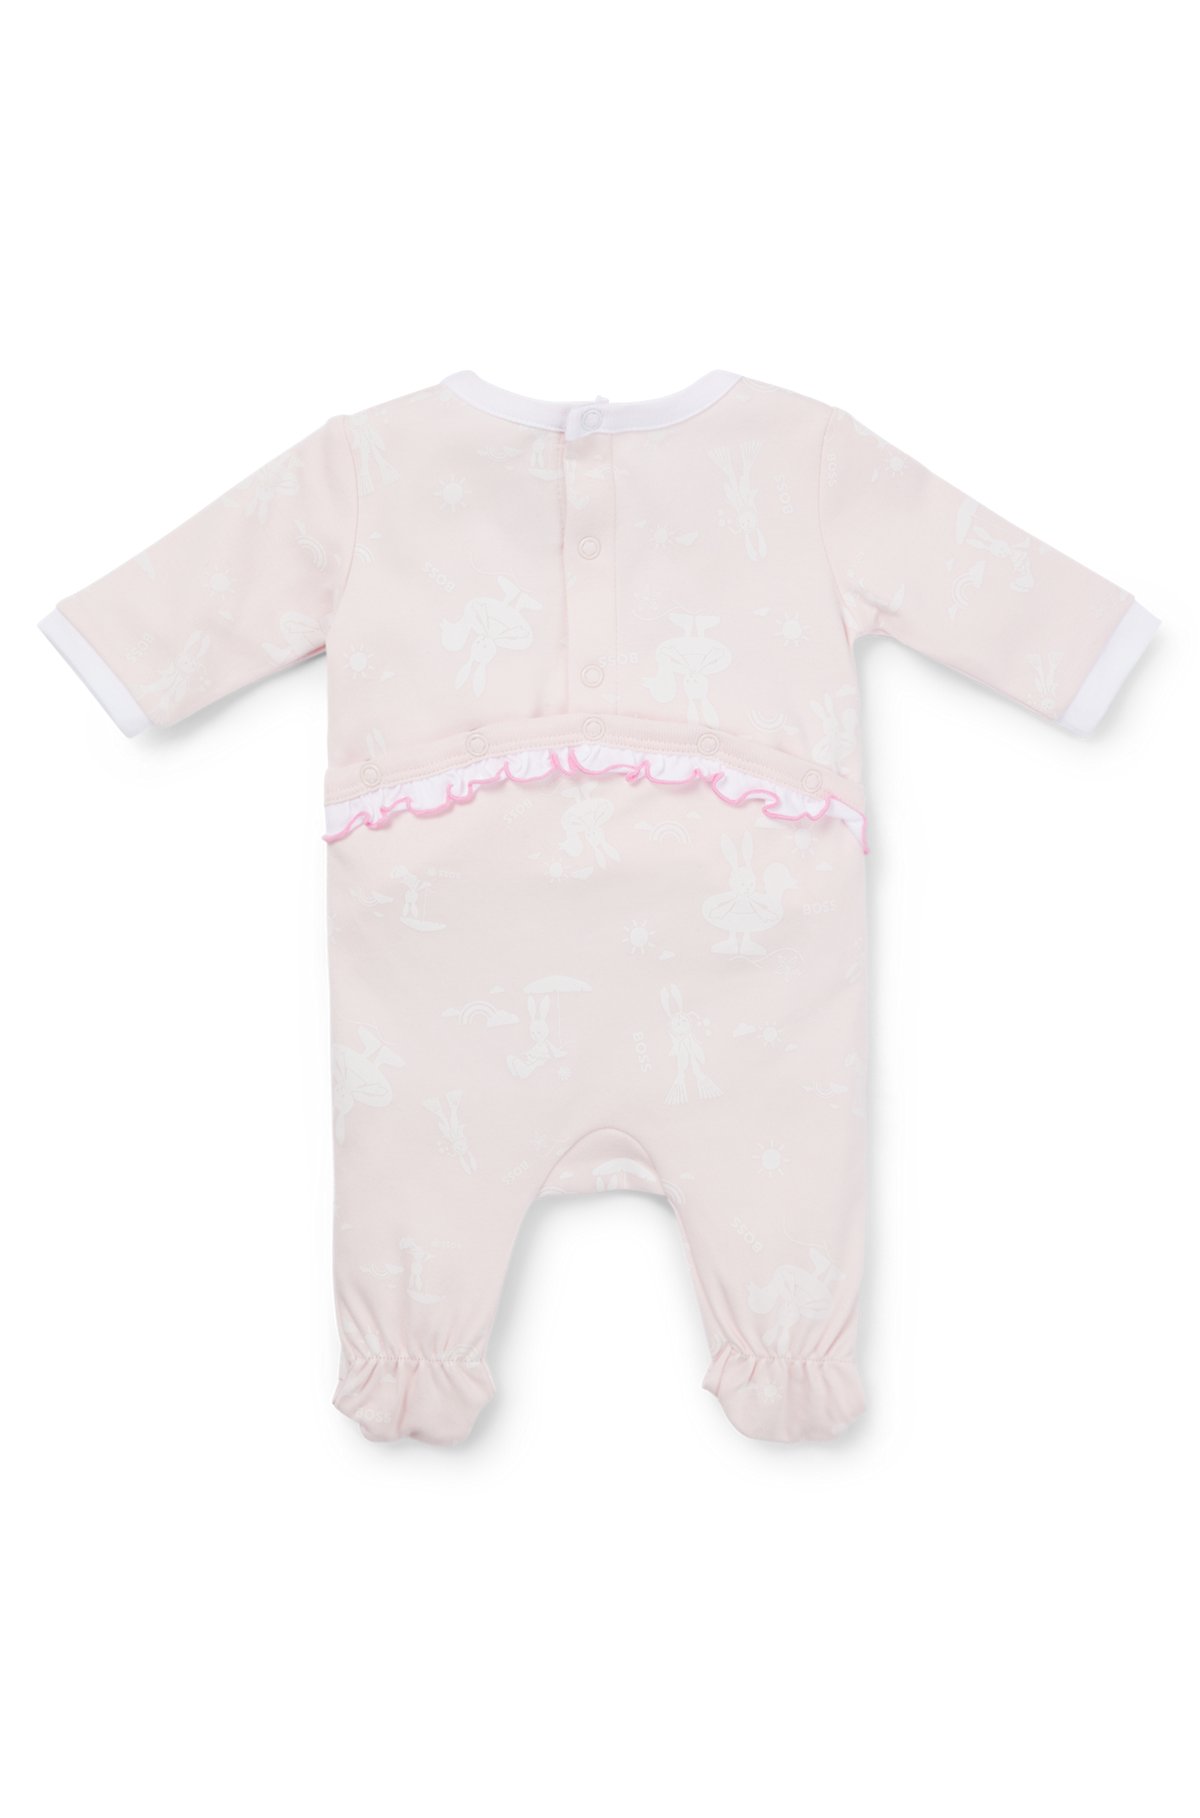 Pijama y gorro para bebés en caja de regalo, Rosa claro